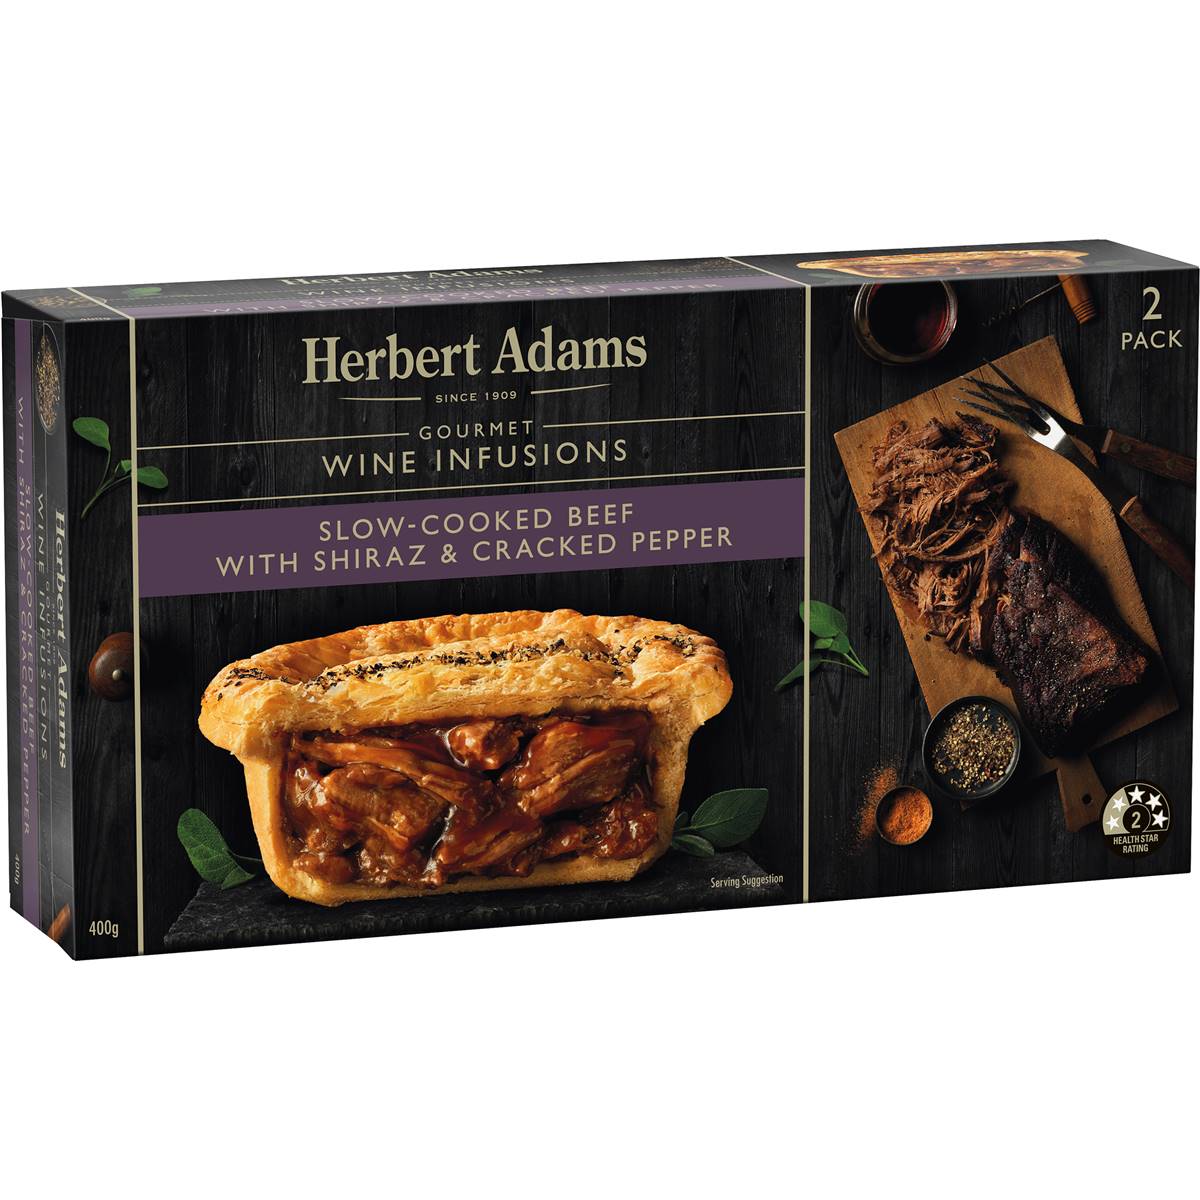 Herbert Adams Slow Cooked Beef w/ Shiraz & Cracked Pepper Pies 2 Pack